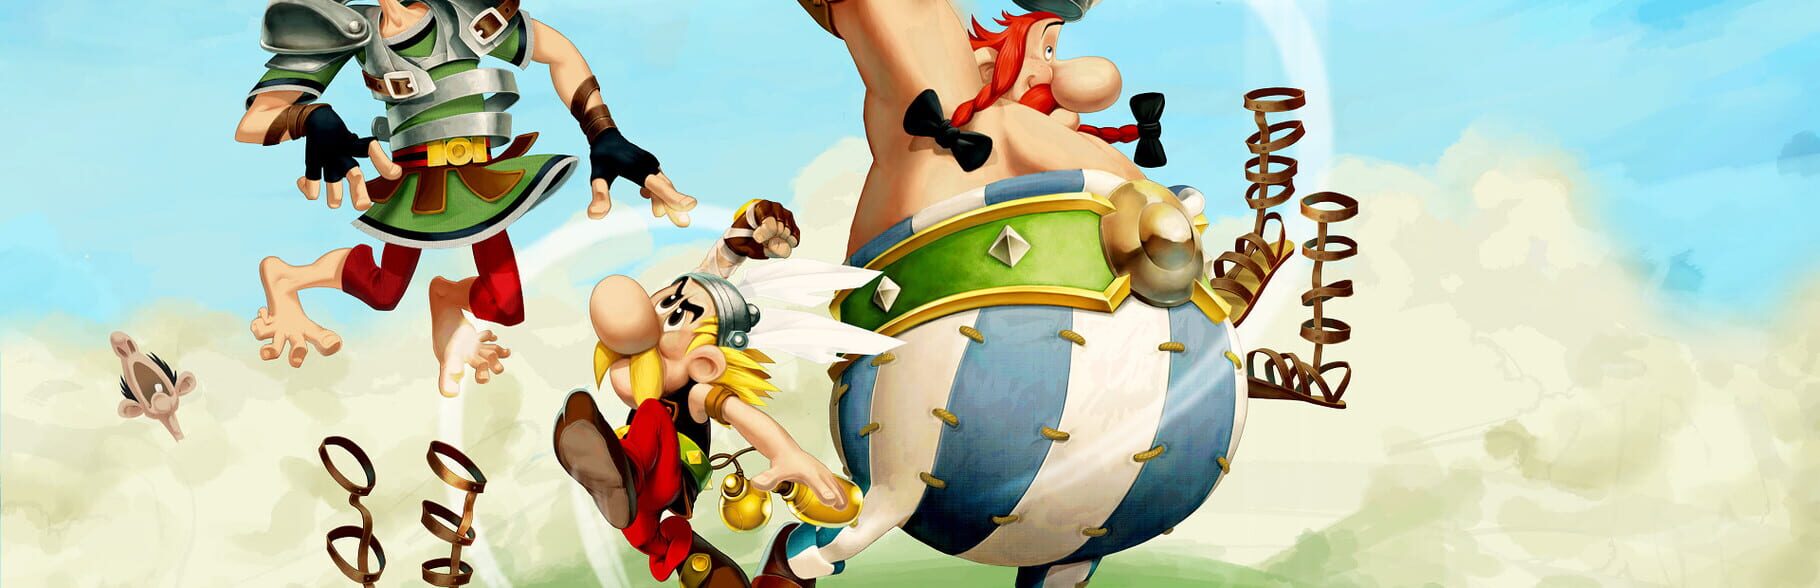 Asterix & Obelix XXL 2 artwork